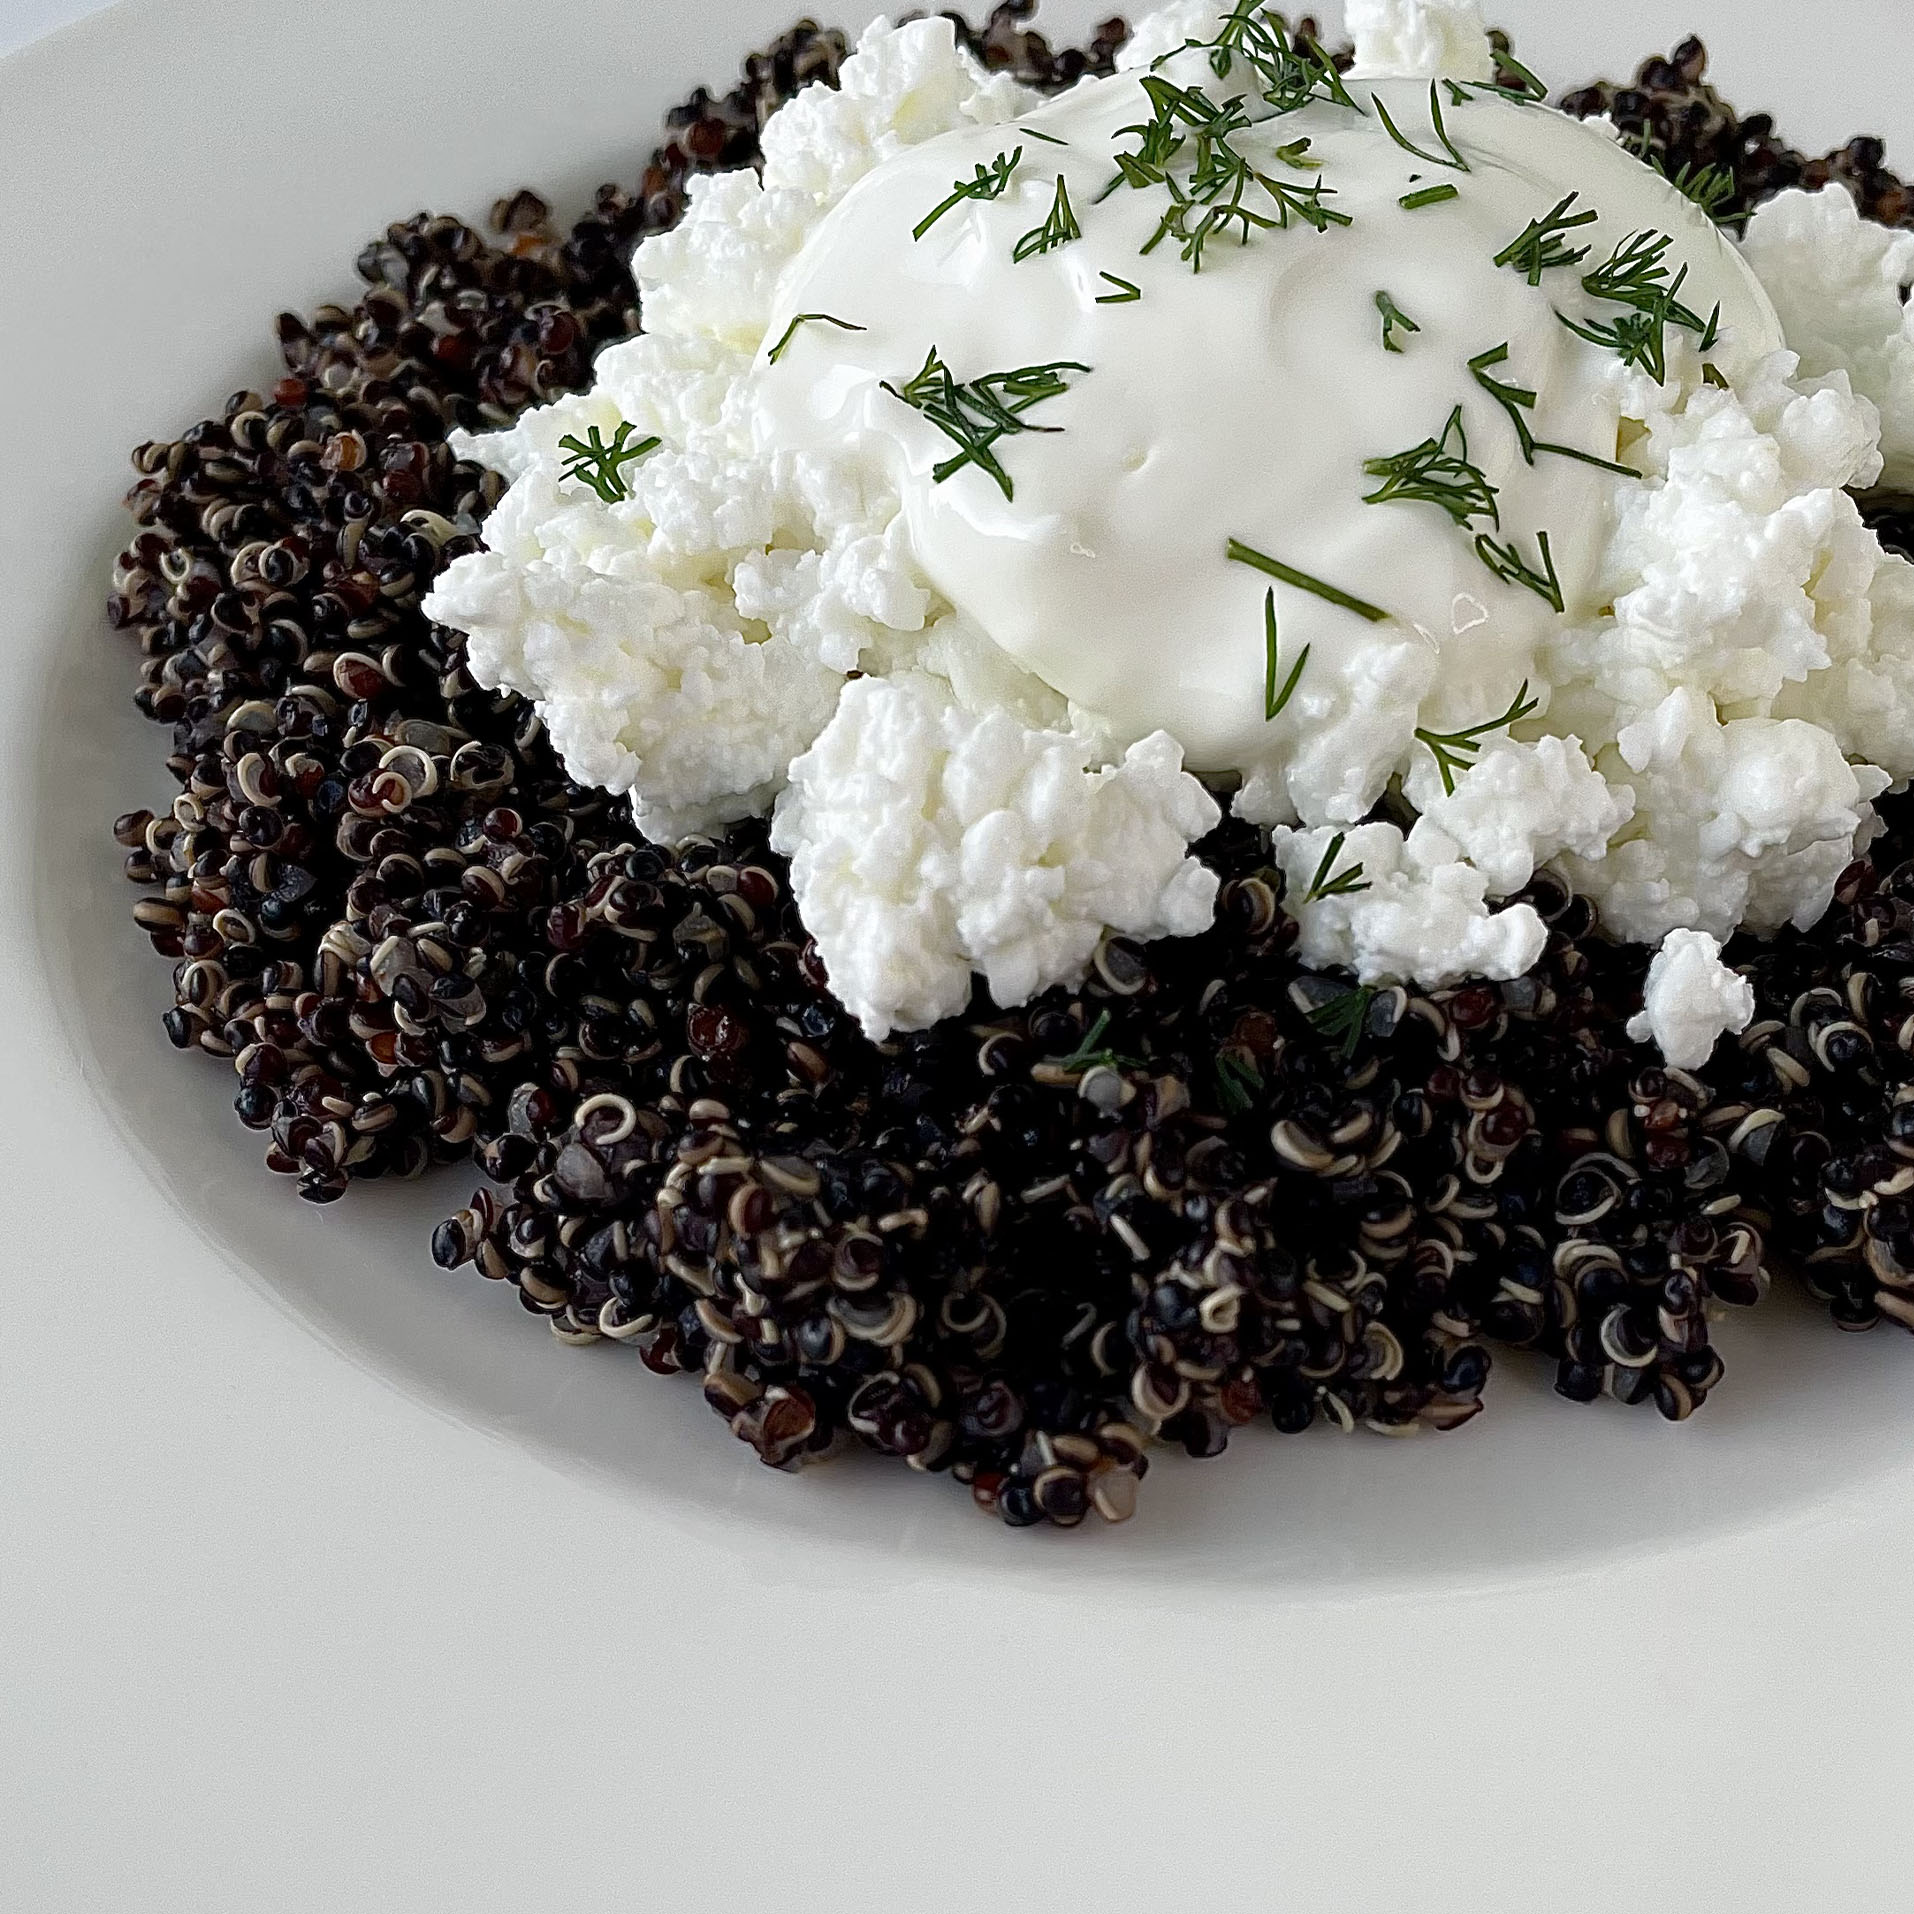 Černá quinoa s tvarohem a kroupami